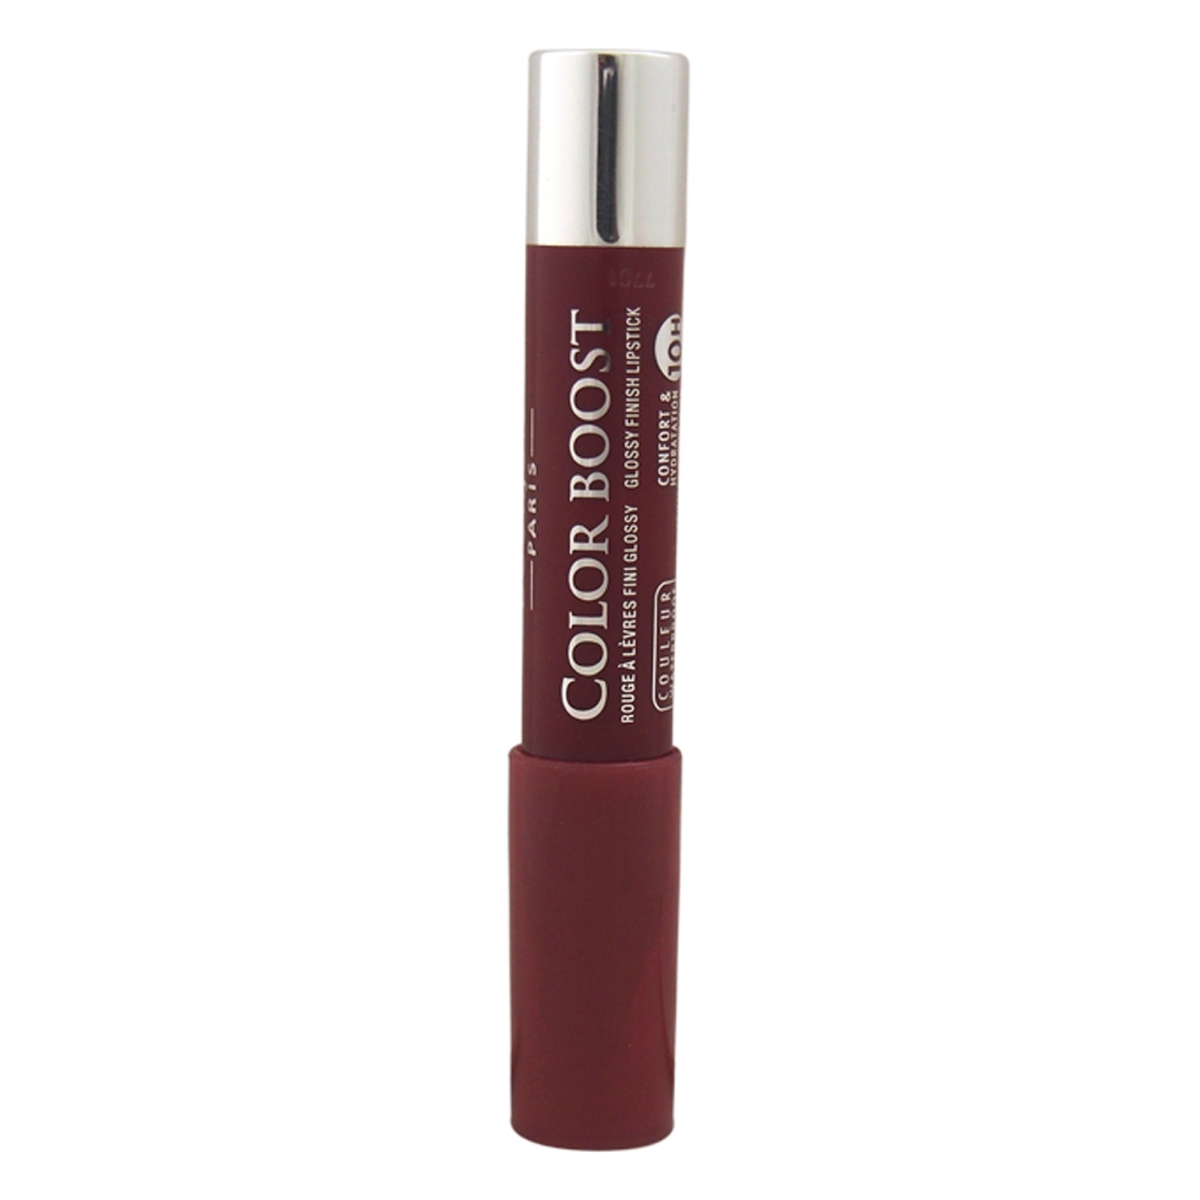 W-c-5770 0.1 Oz No. 06 Spf 15 Color Boost Plum Russian Lipstick For Women